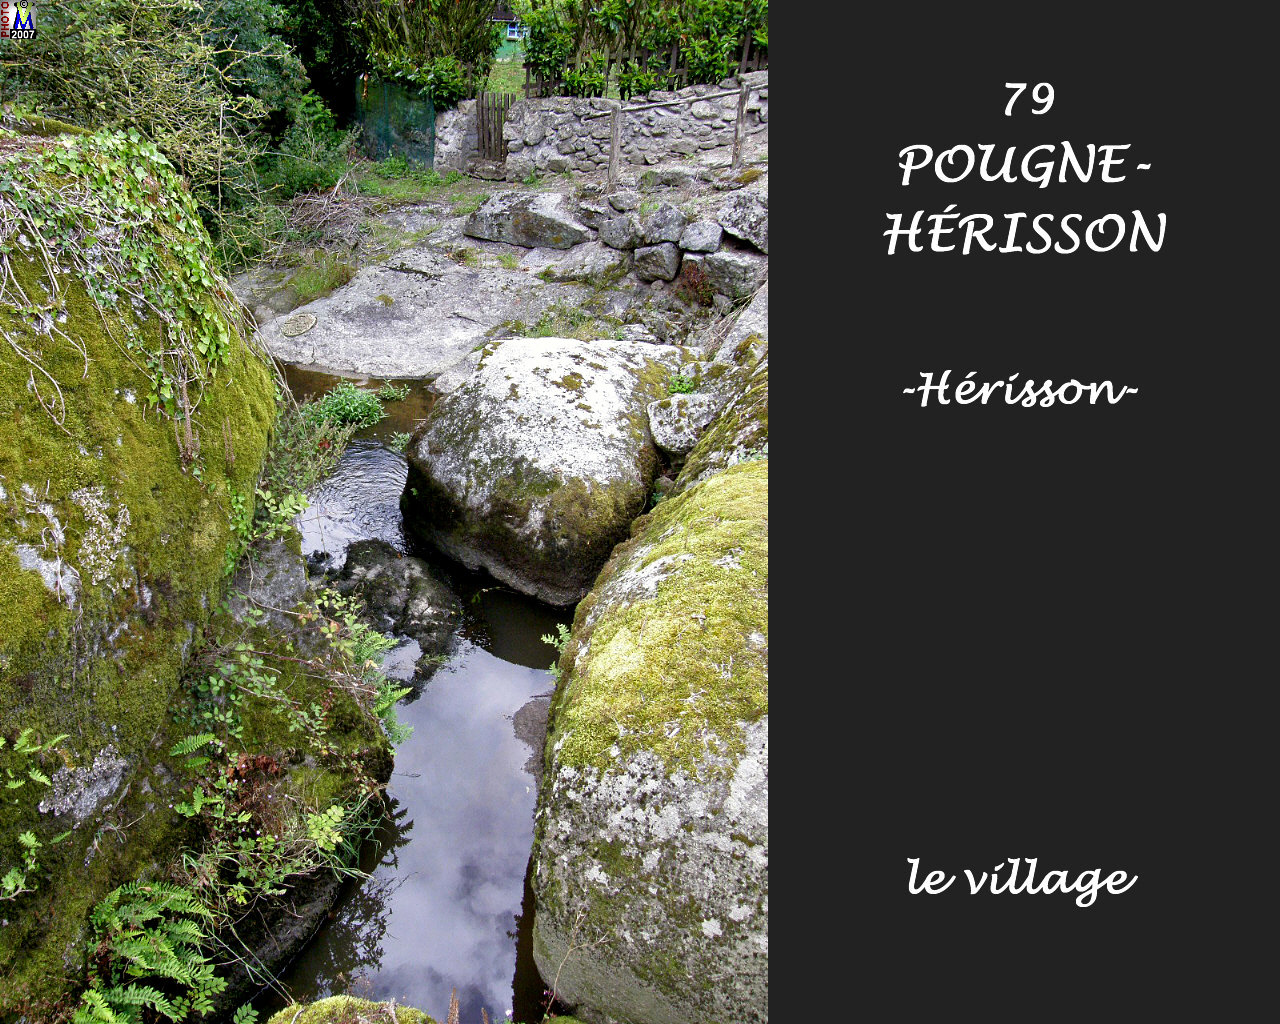 79POUGNE-HERISSON_herisson_village_124.jpg